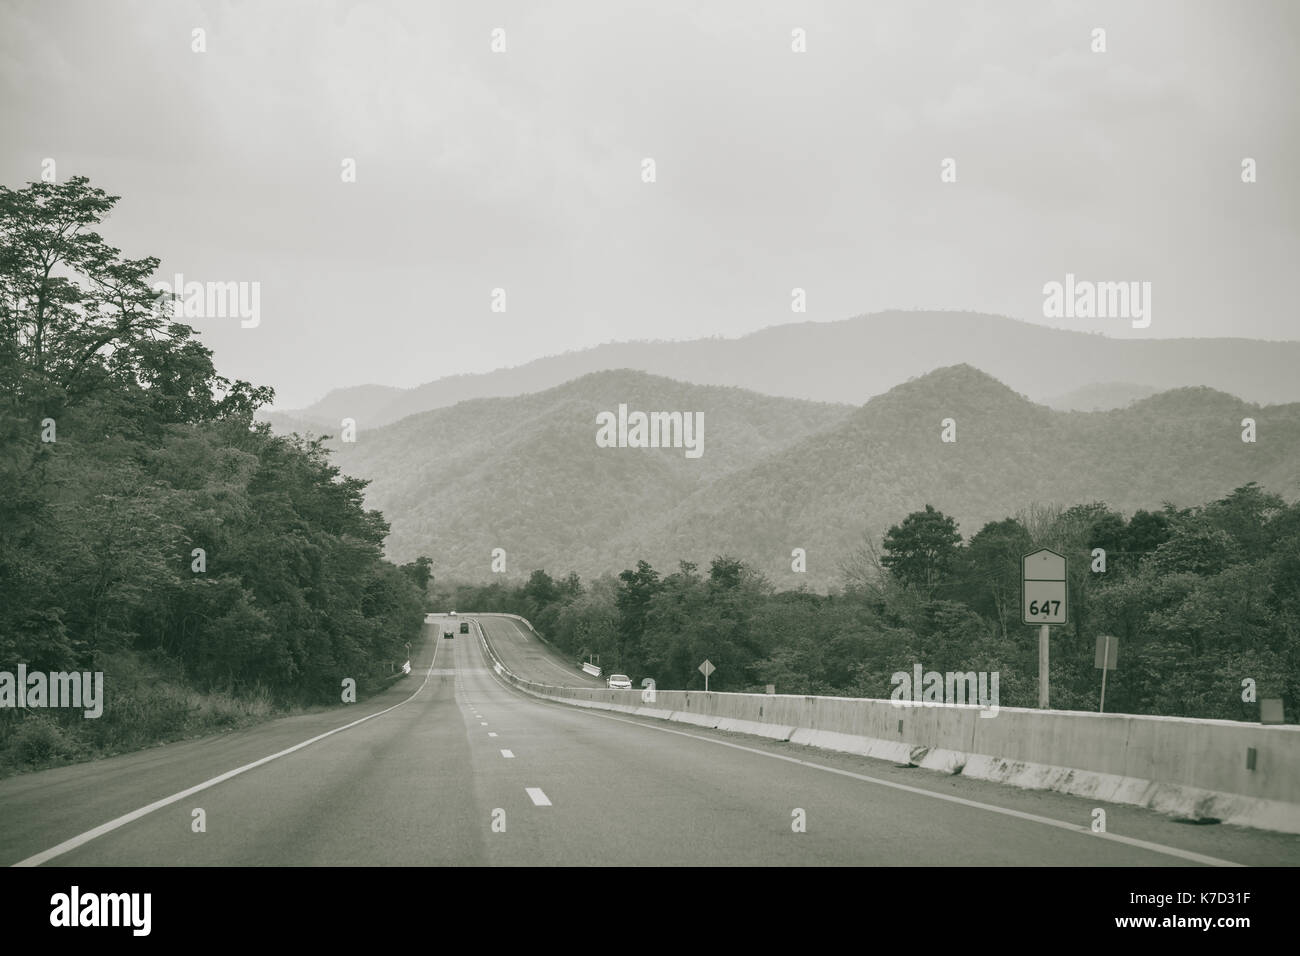 Lunga strada diritta con vista sulla montagna di campagna haze freeway fotografia in bianco e nero Foto Stock